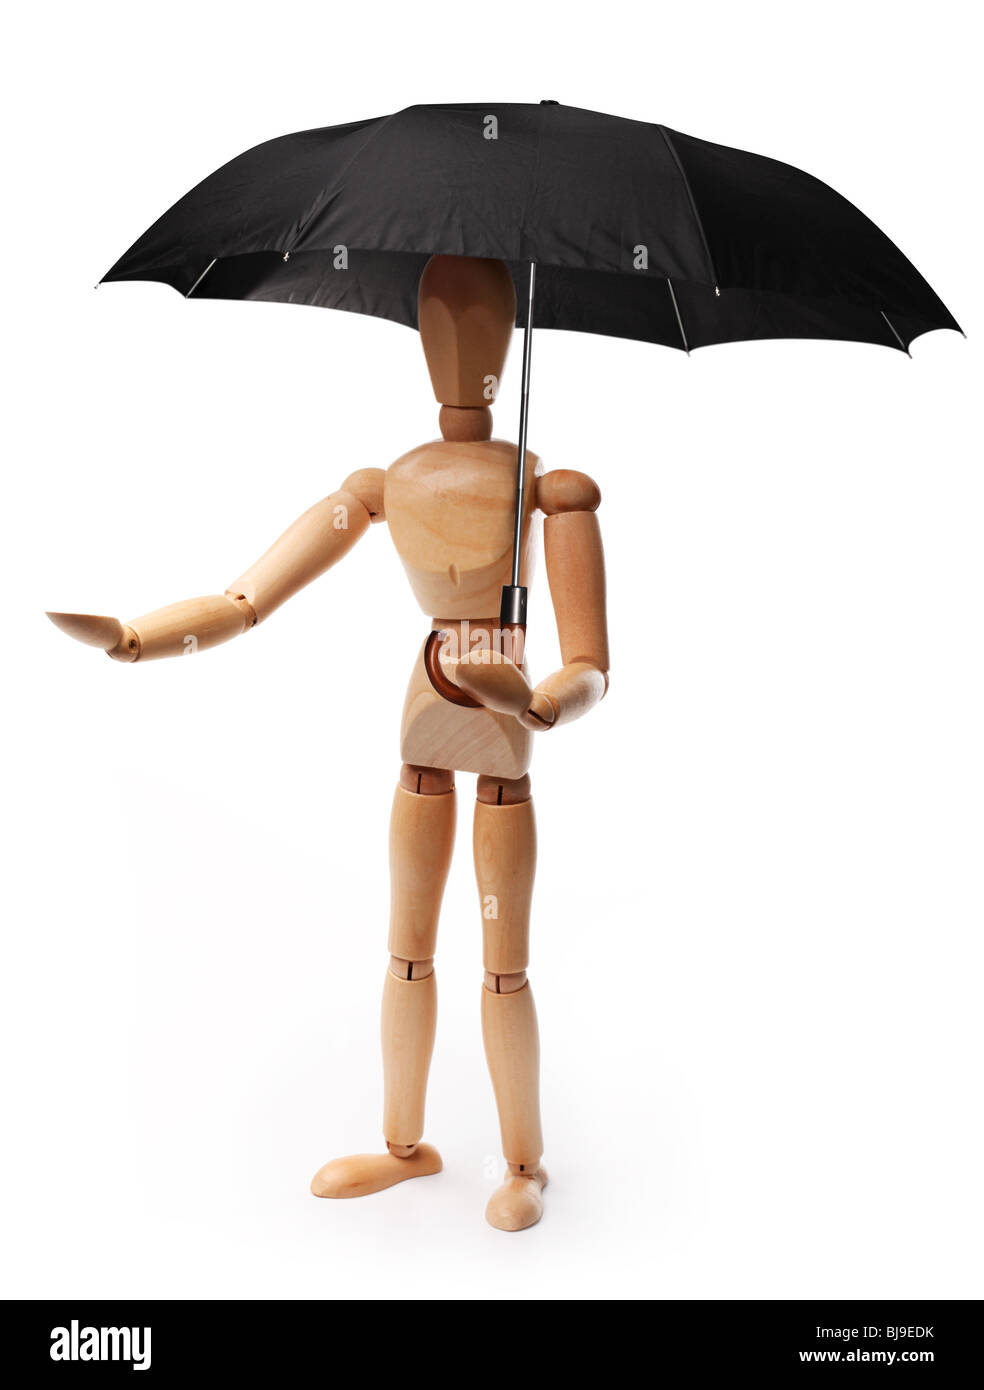 Hölzerne Mann hält einen Regenschirm. Objekt auf einem weißen Hintergrund. Stockfoto